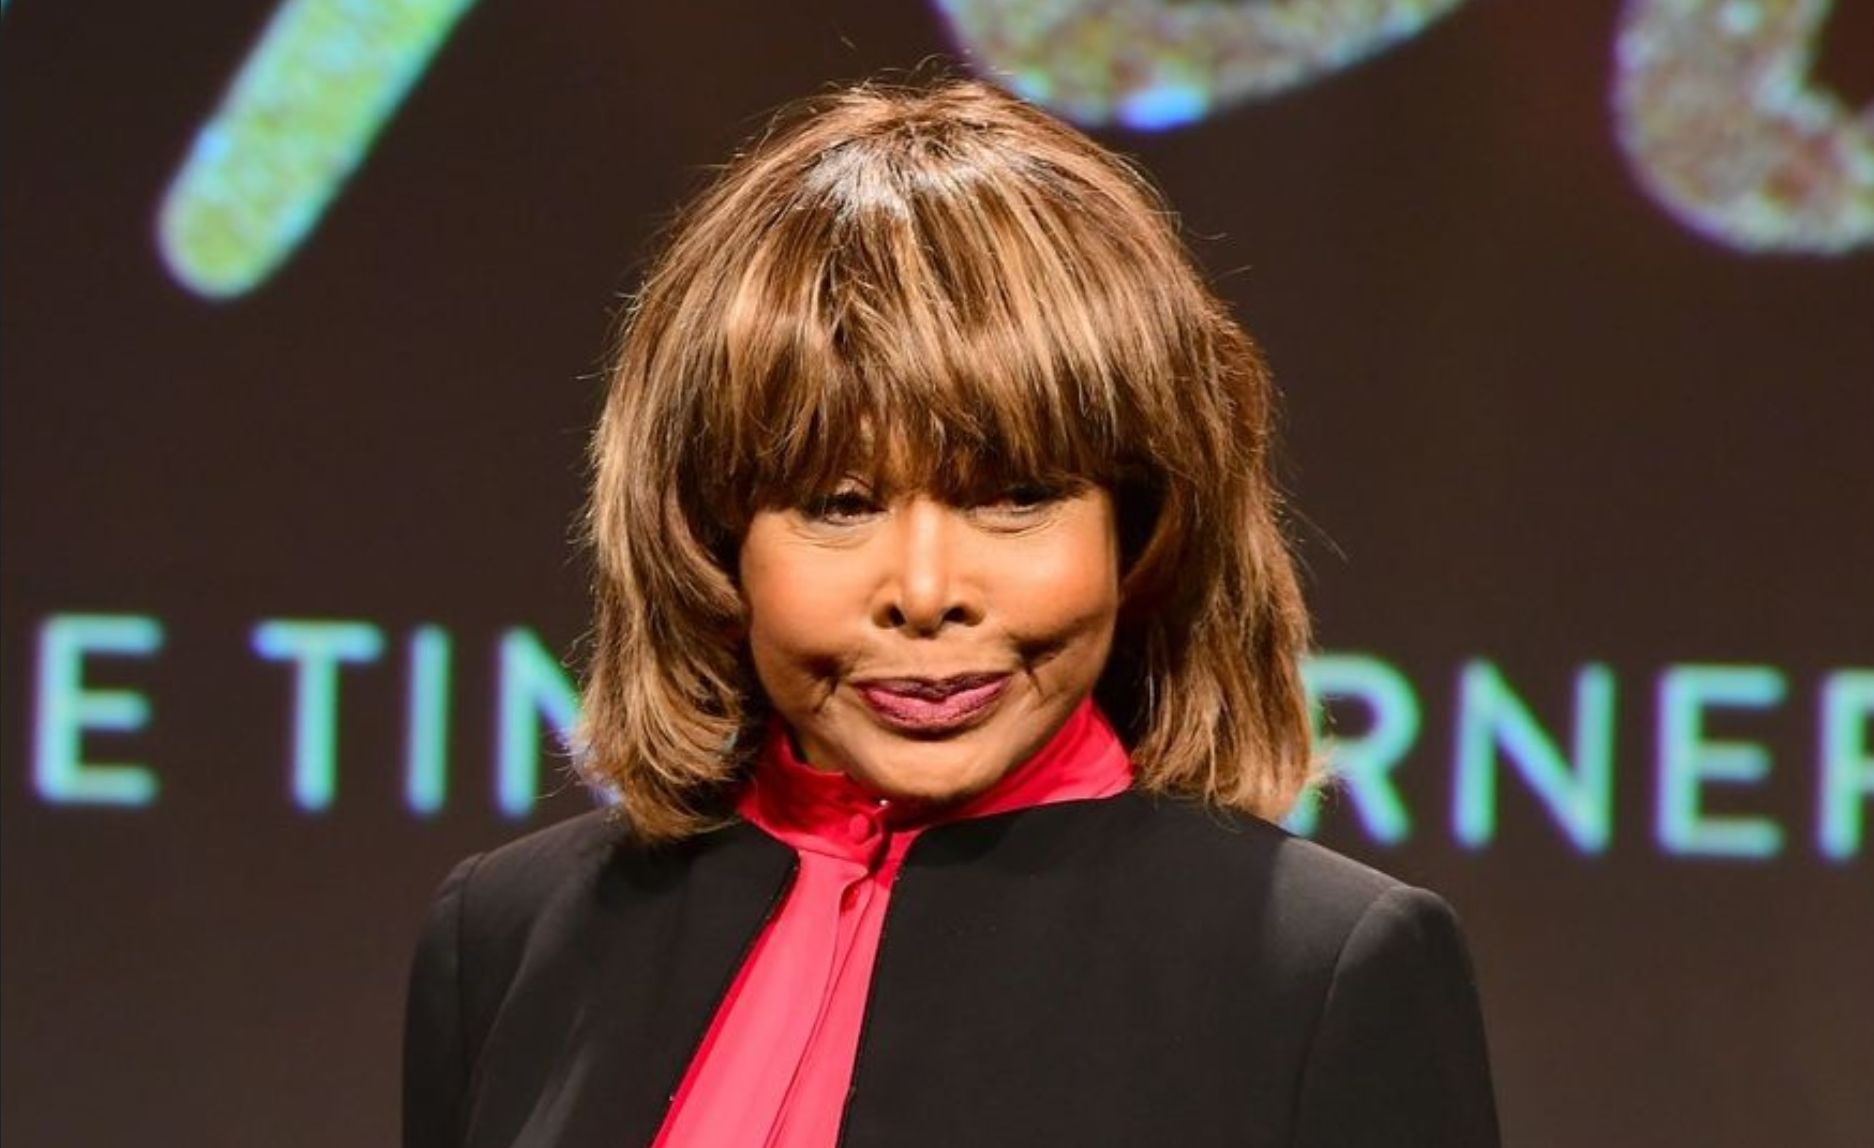 Tina Turner revient sur sa vie de femme battue : "C’est comme une malédiction"